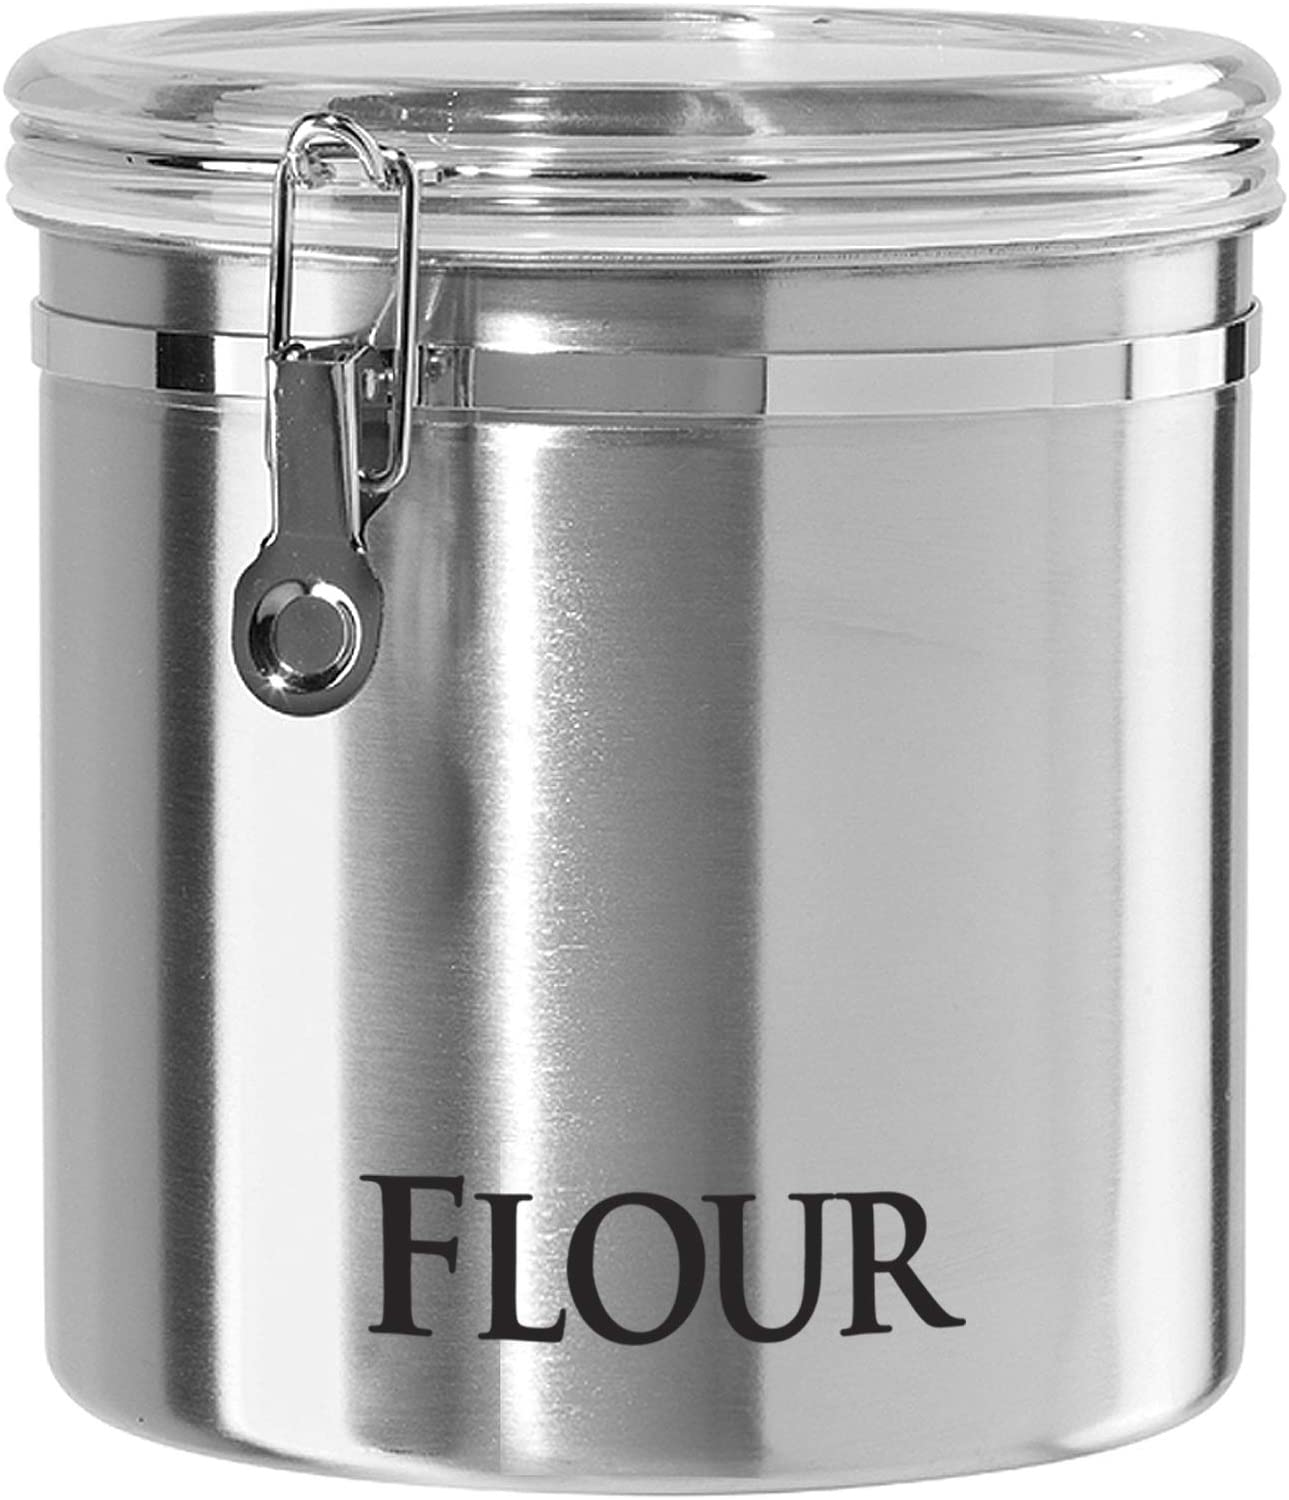 Flour Container